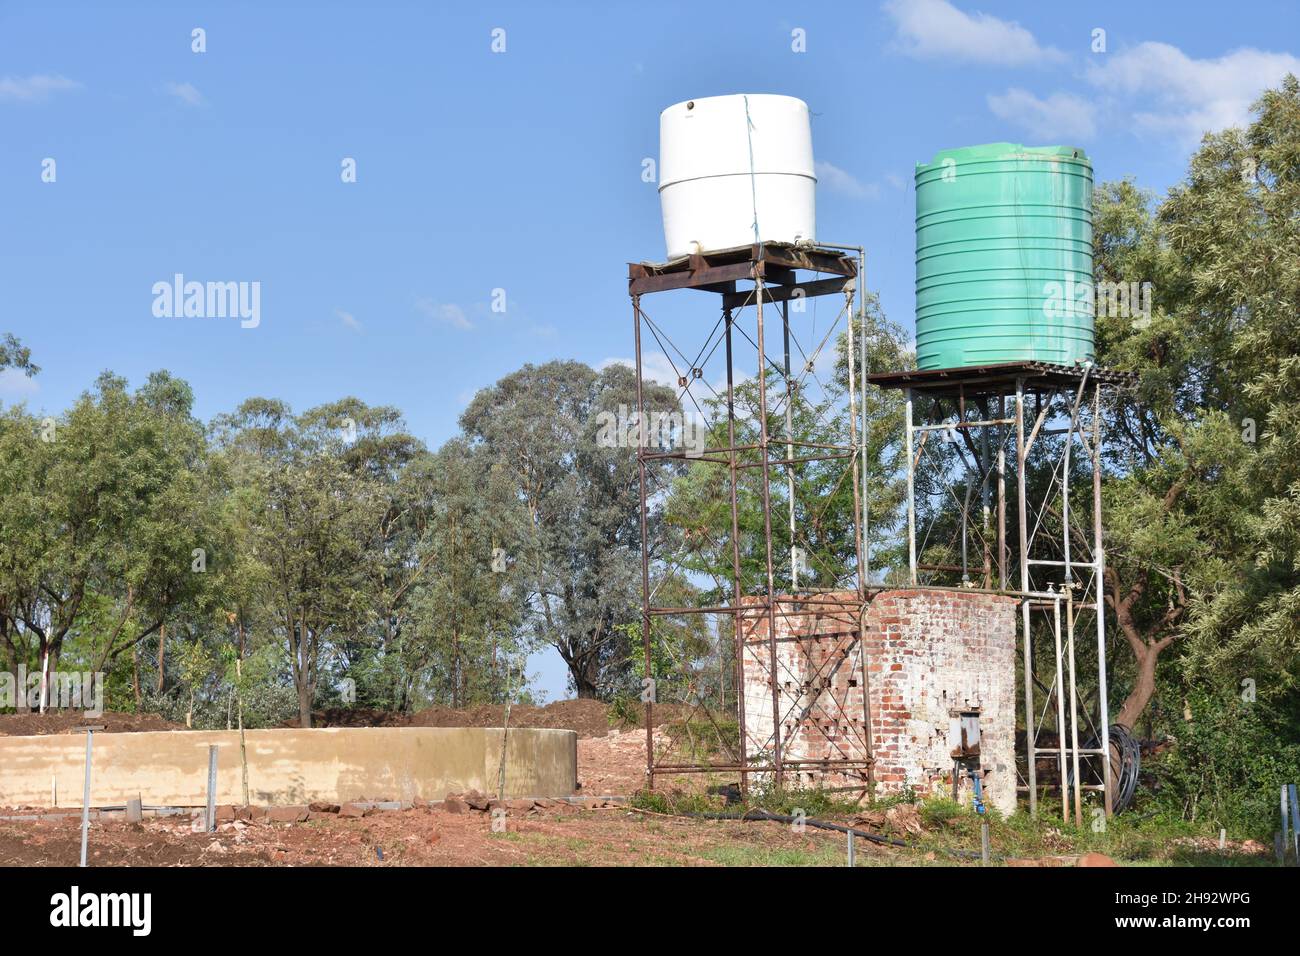 Serbatoi o contenitori in plastica verde e bianco su una struttura o torre in metallo sopraelevata per la pressione comunemente utilizzati in Africa meridionale per la casa Foto Stock